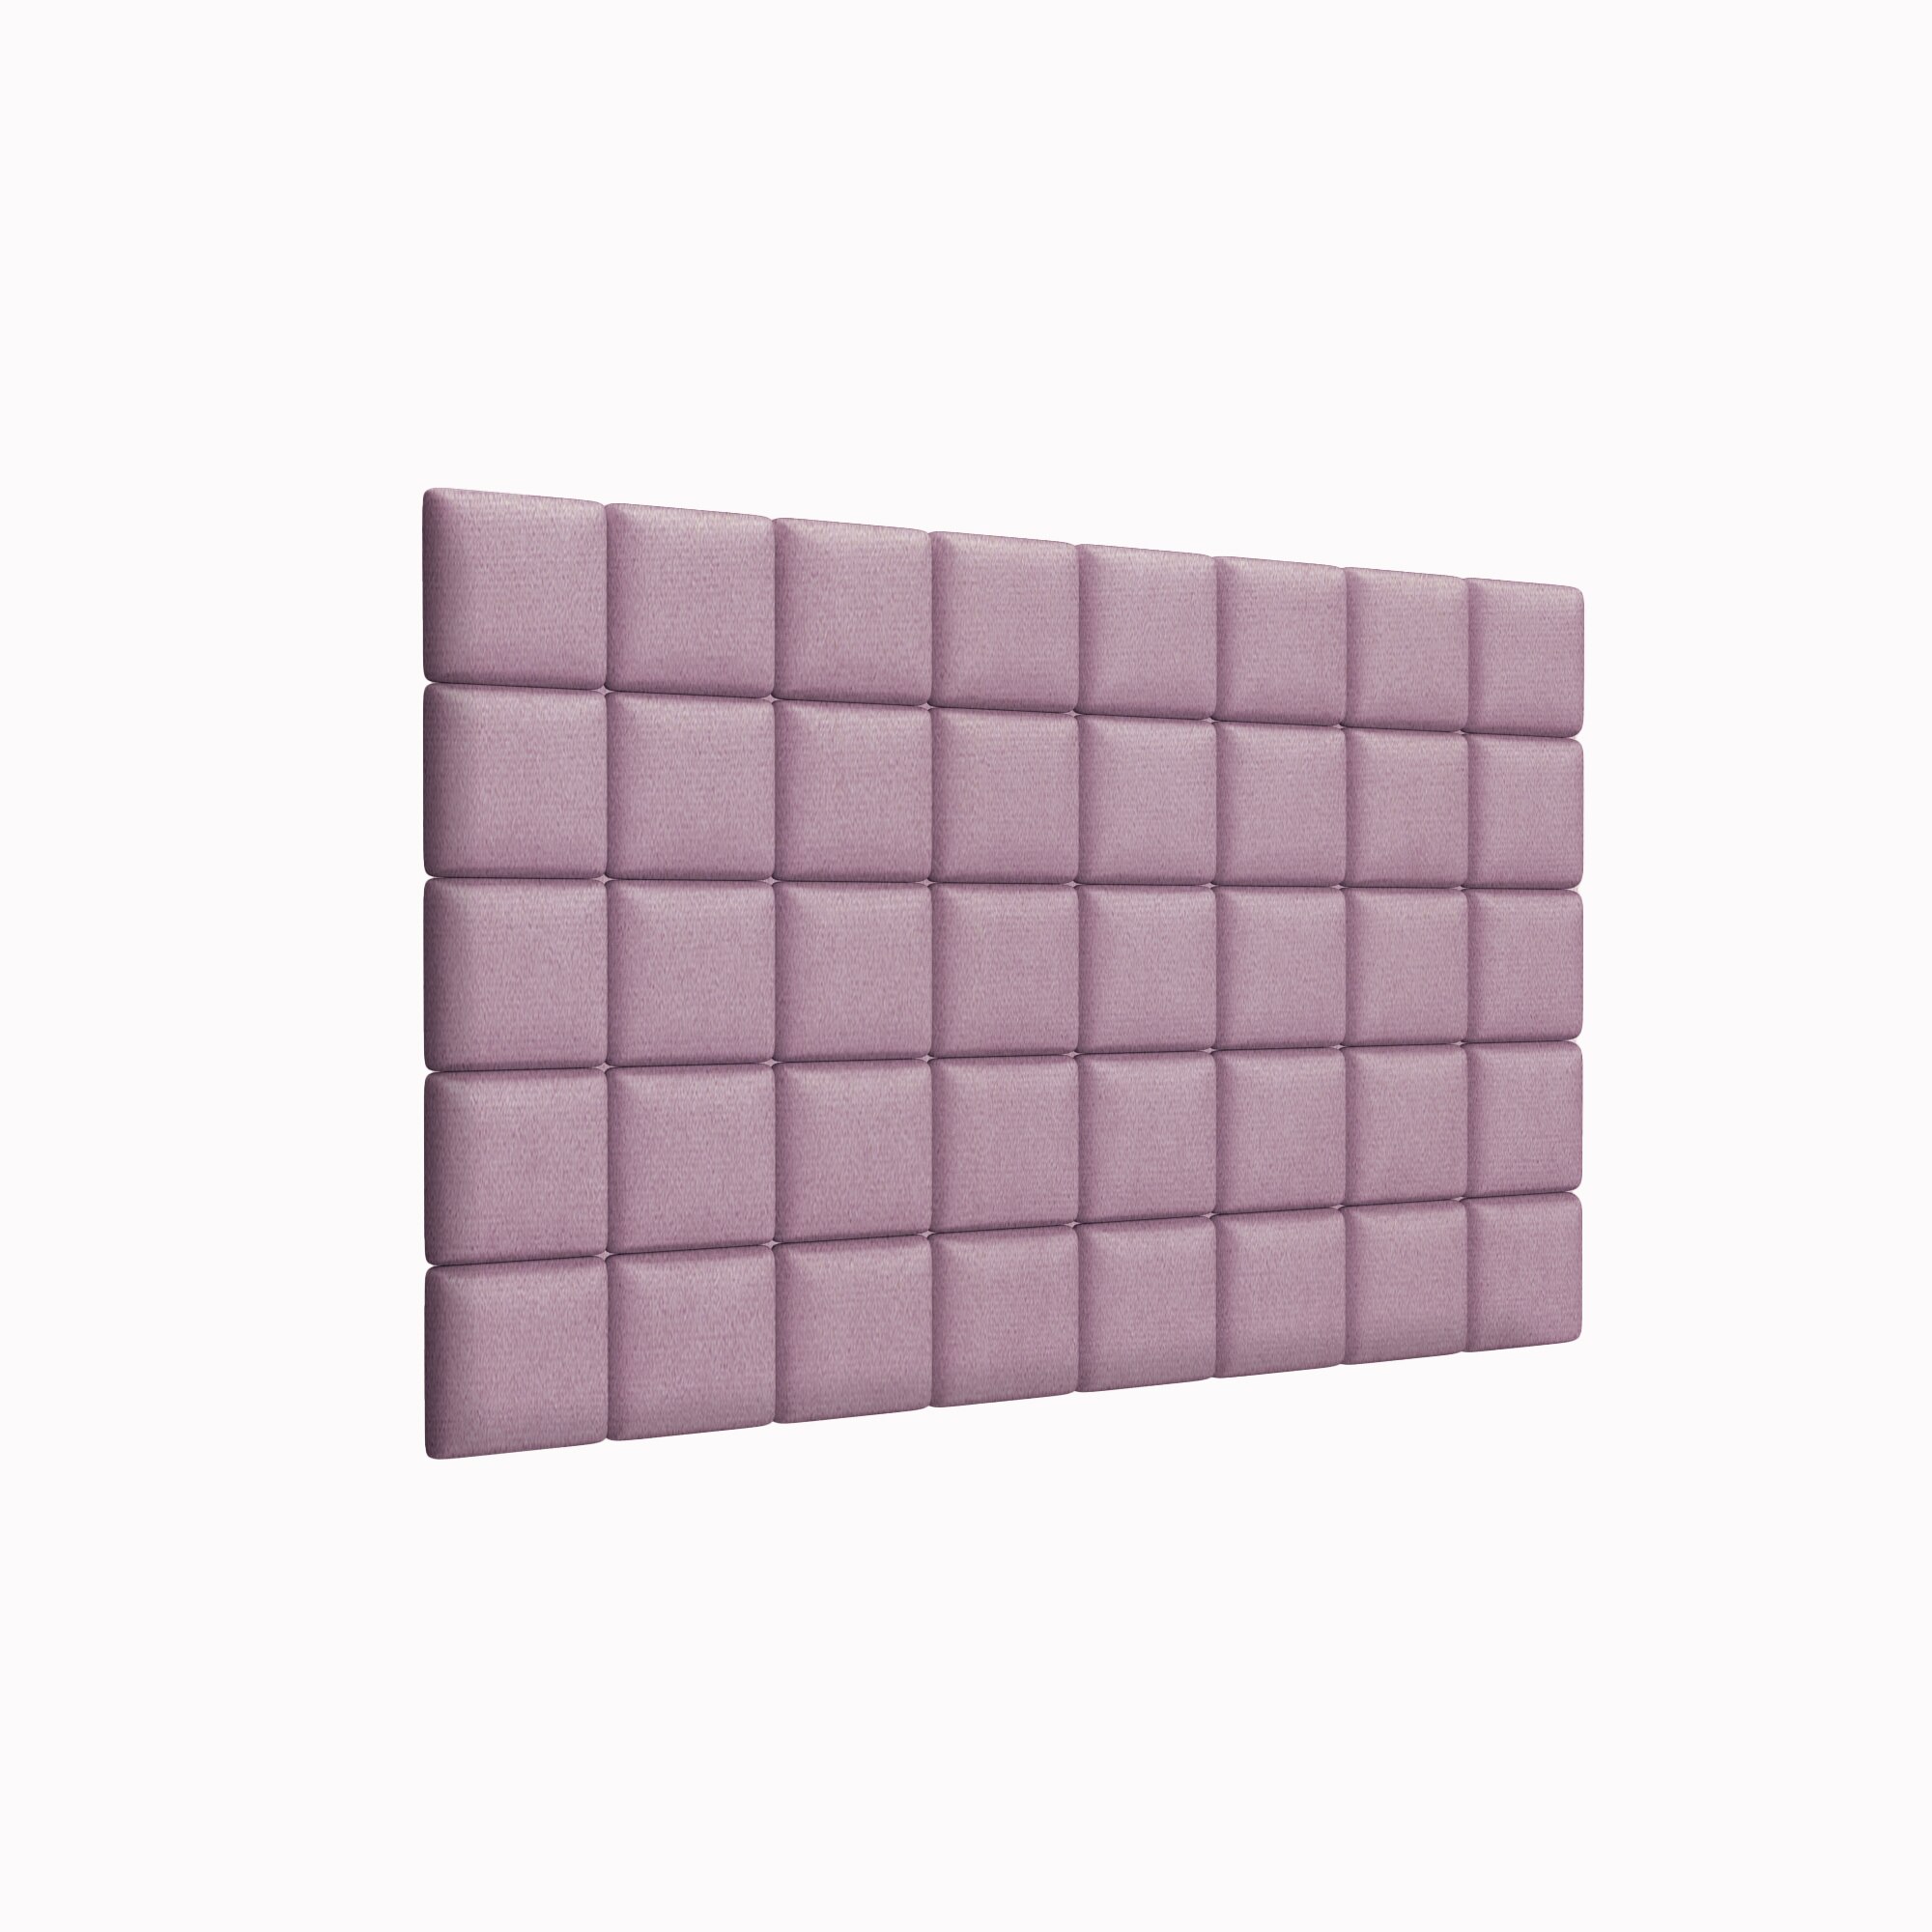 Стеновая панель Velour Pink 15х15 см 8 шт. панель с пайетками для фотозоны 30 30см розовый